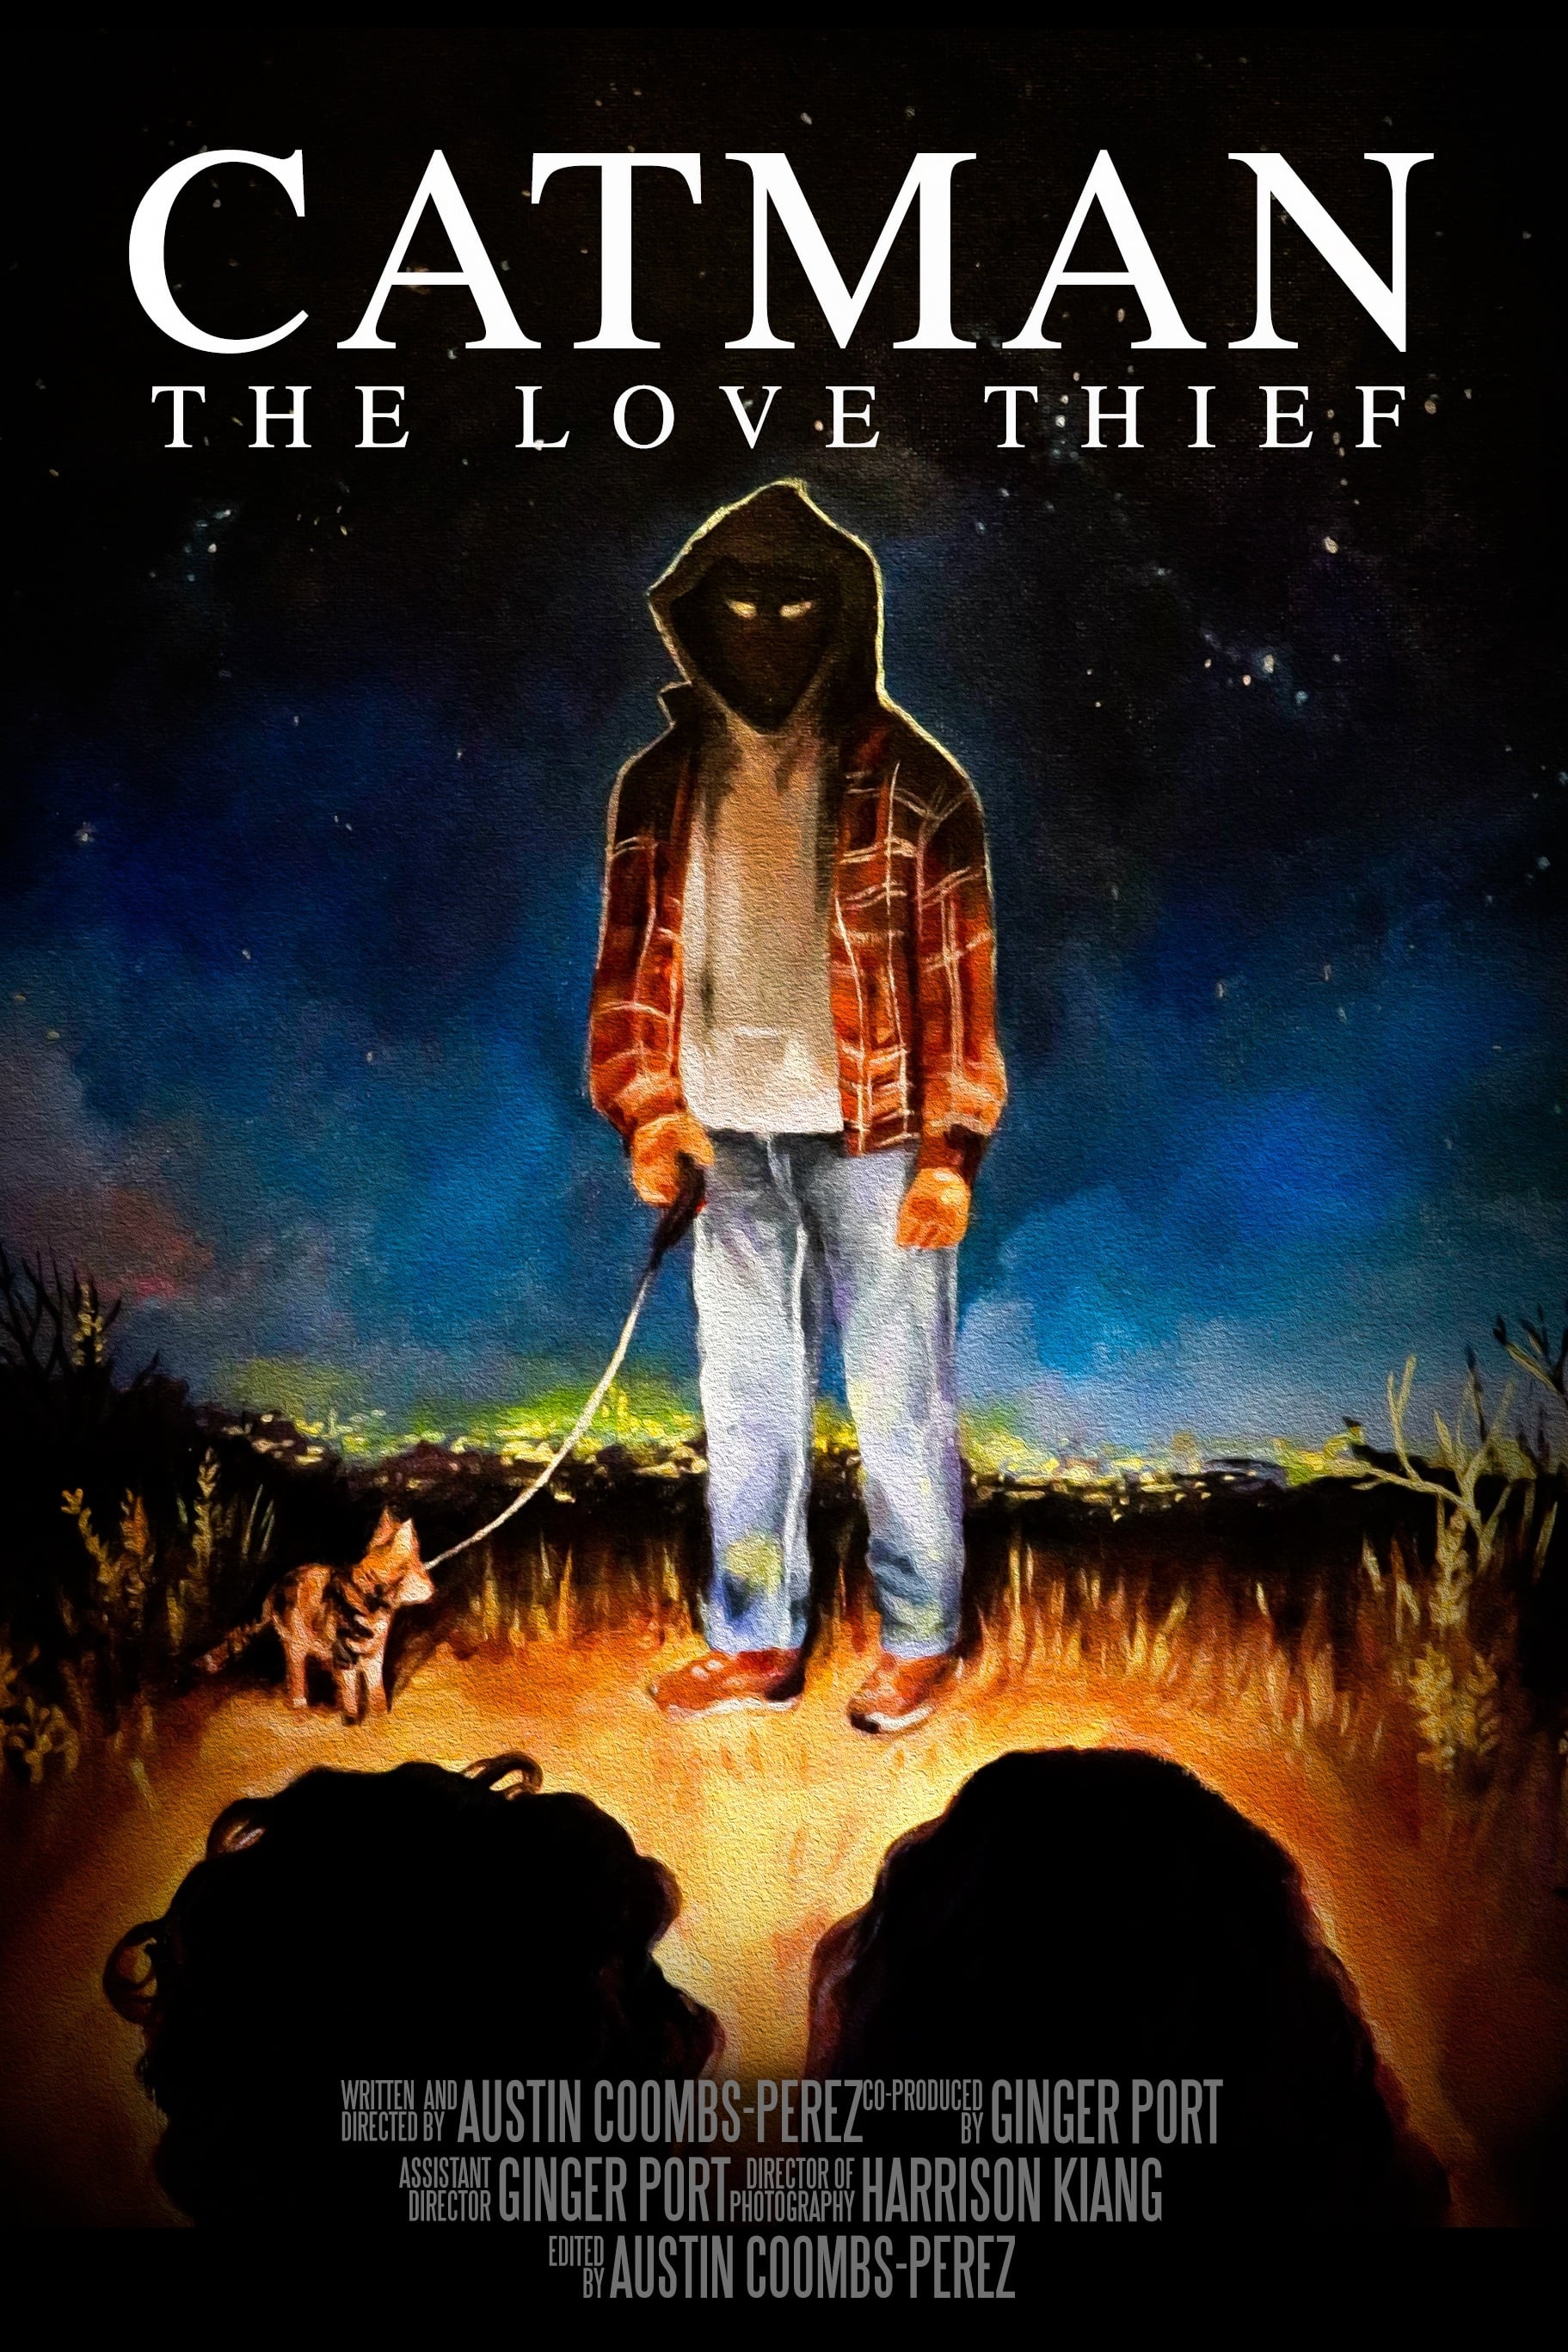 Catman: The Love Thief